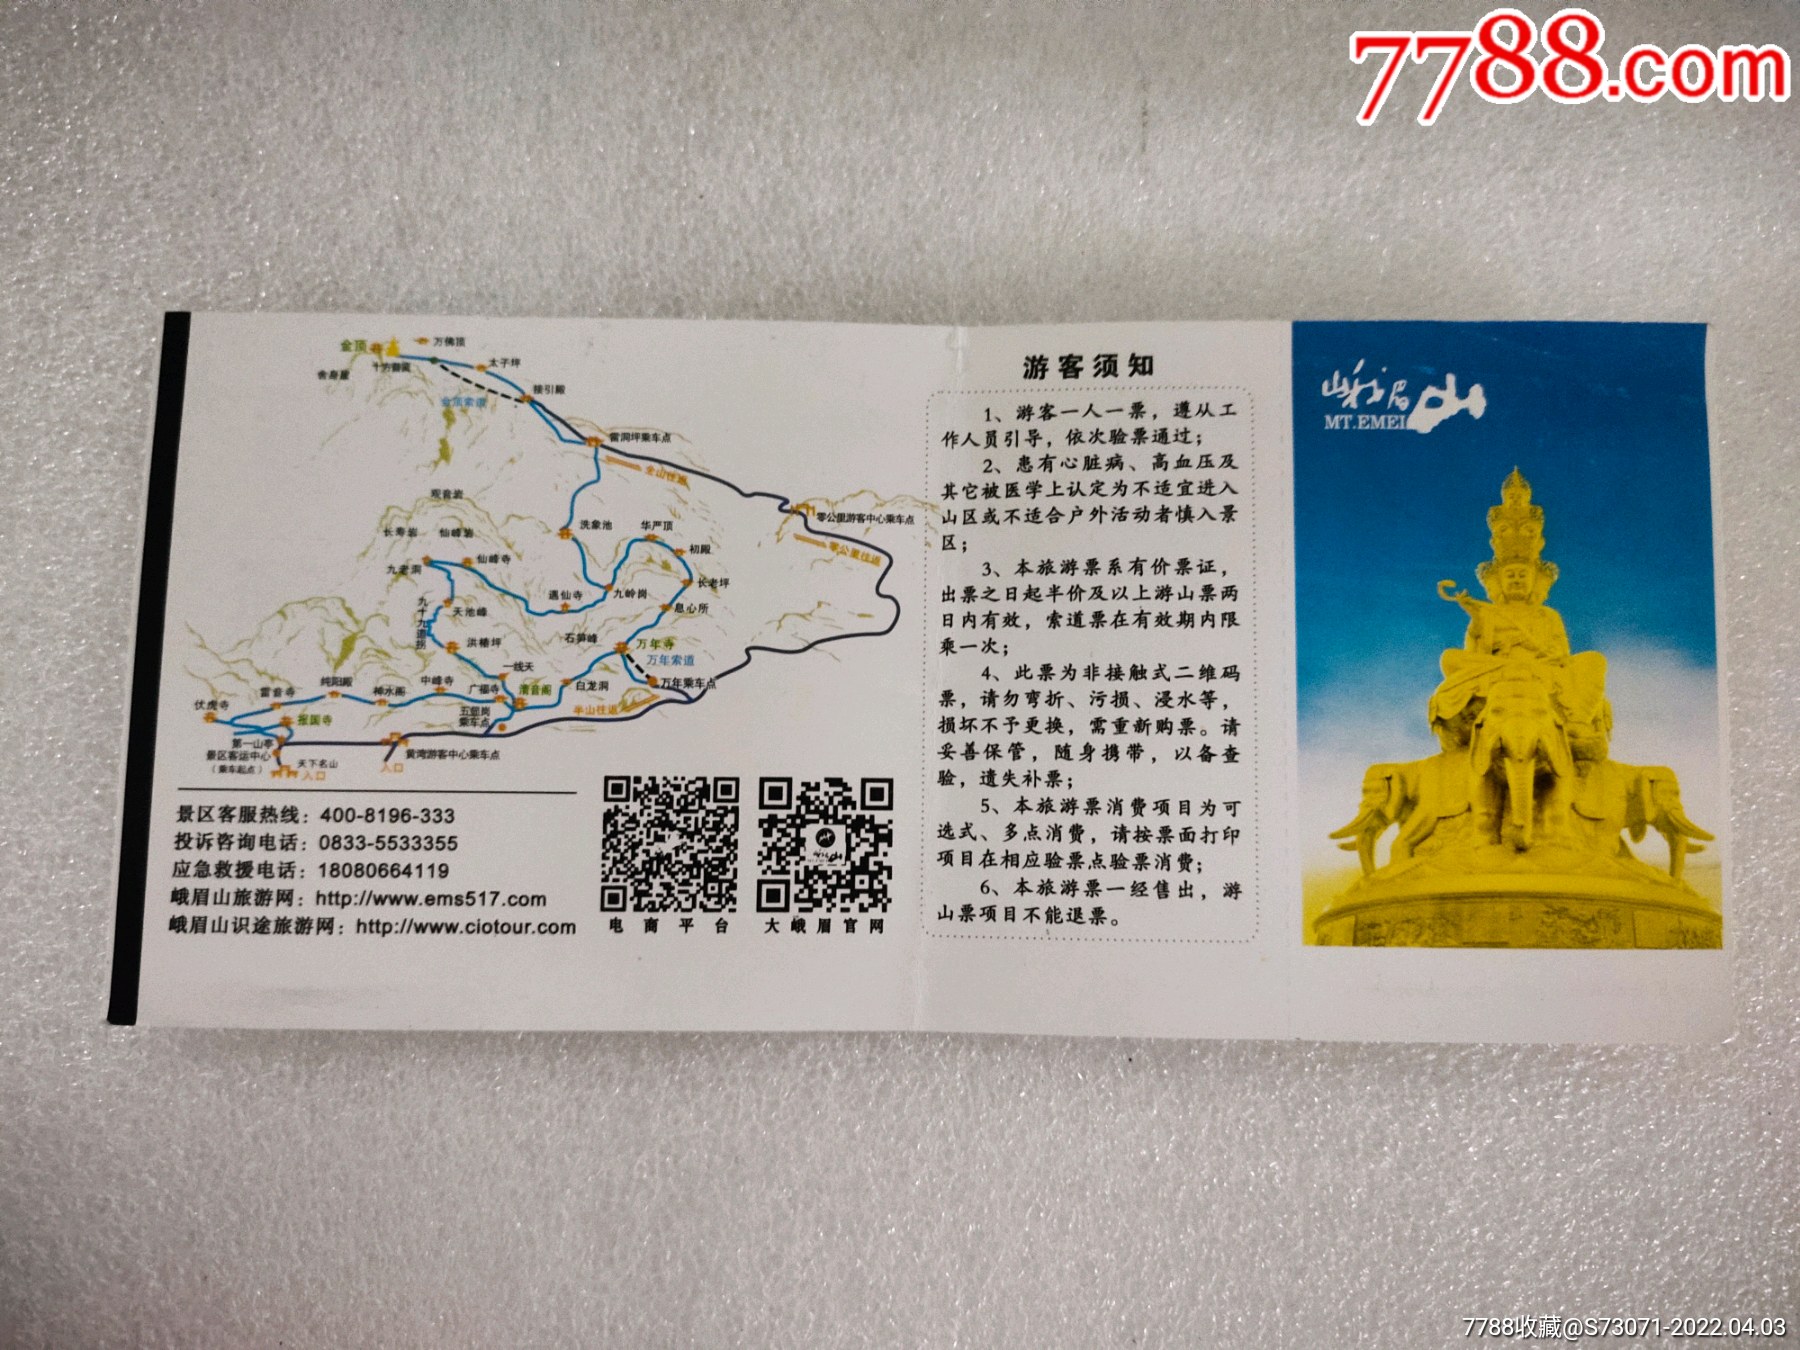 佛来山旅游景区门票图片